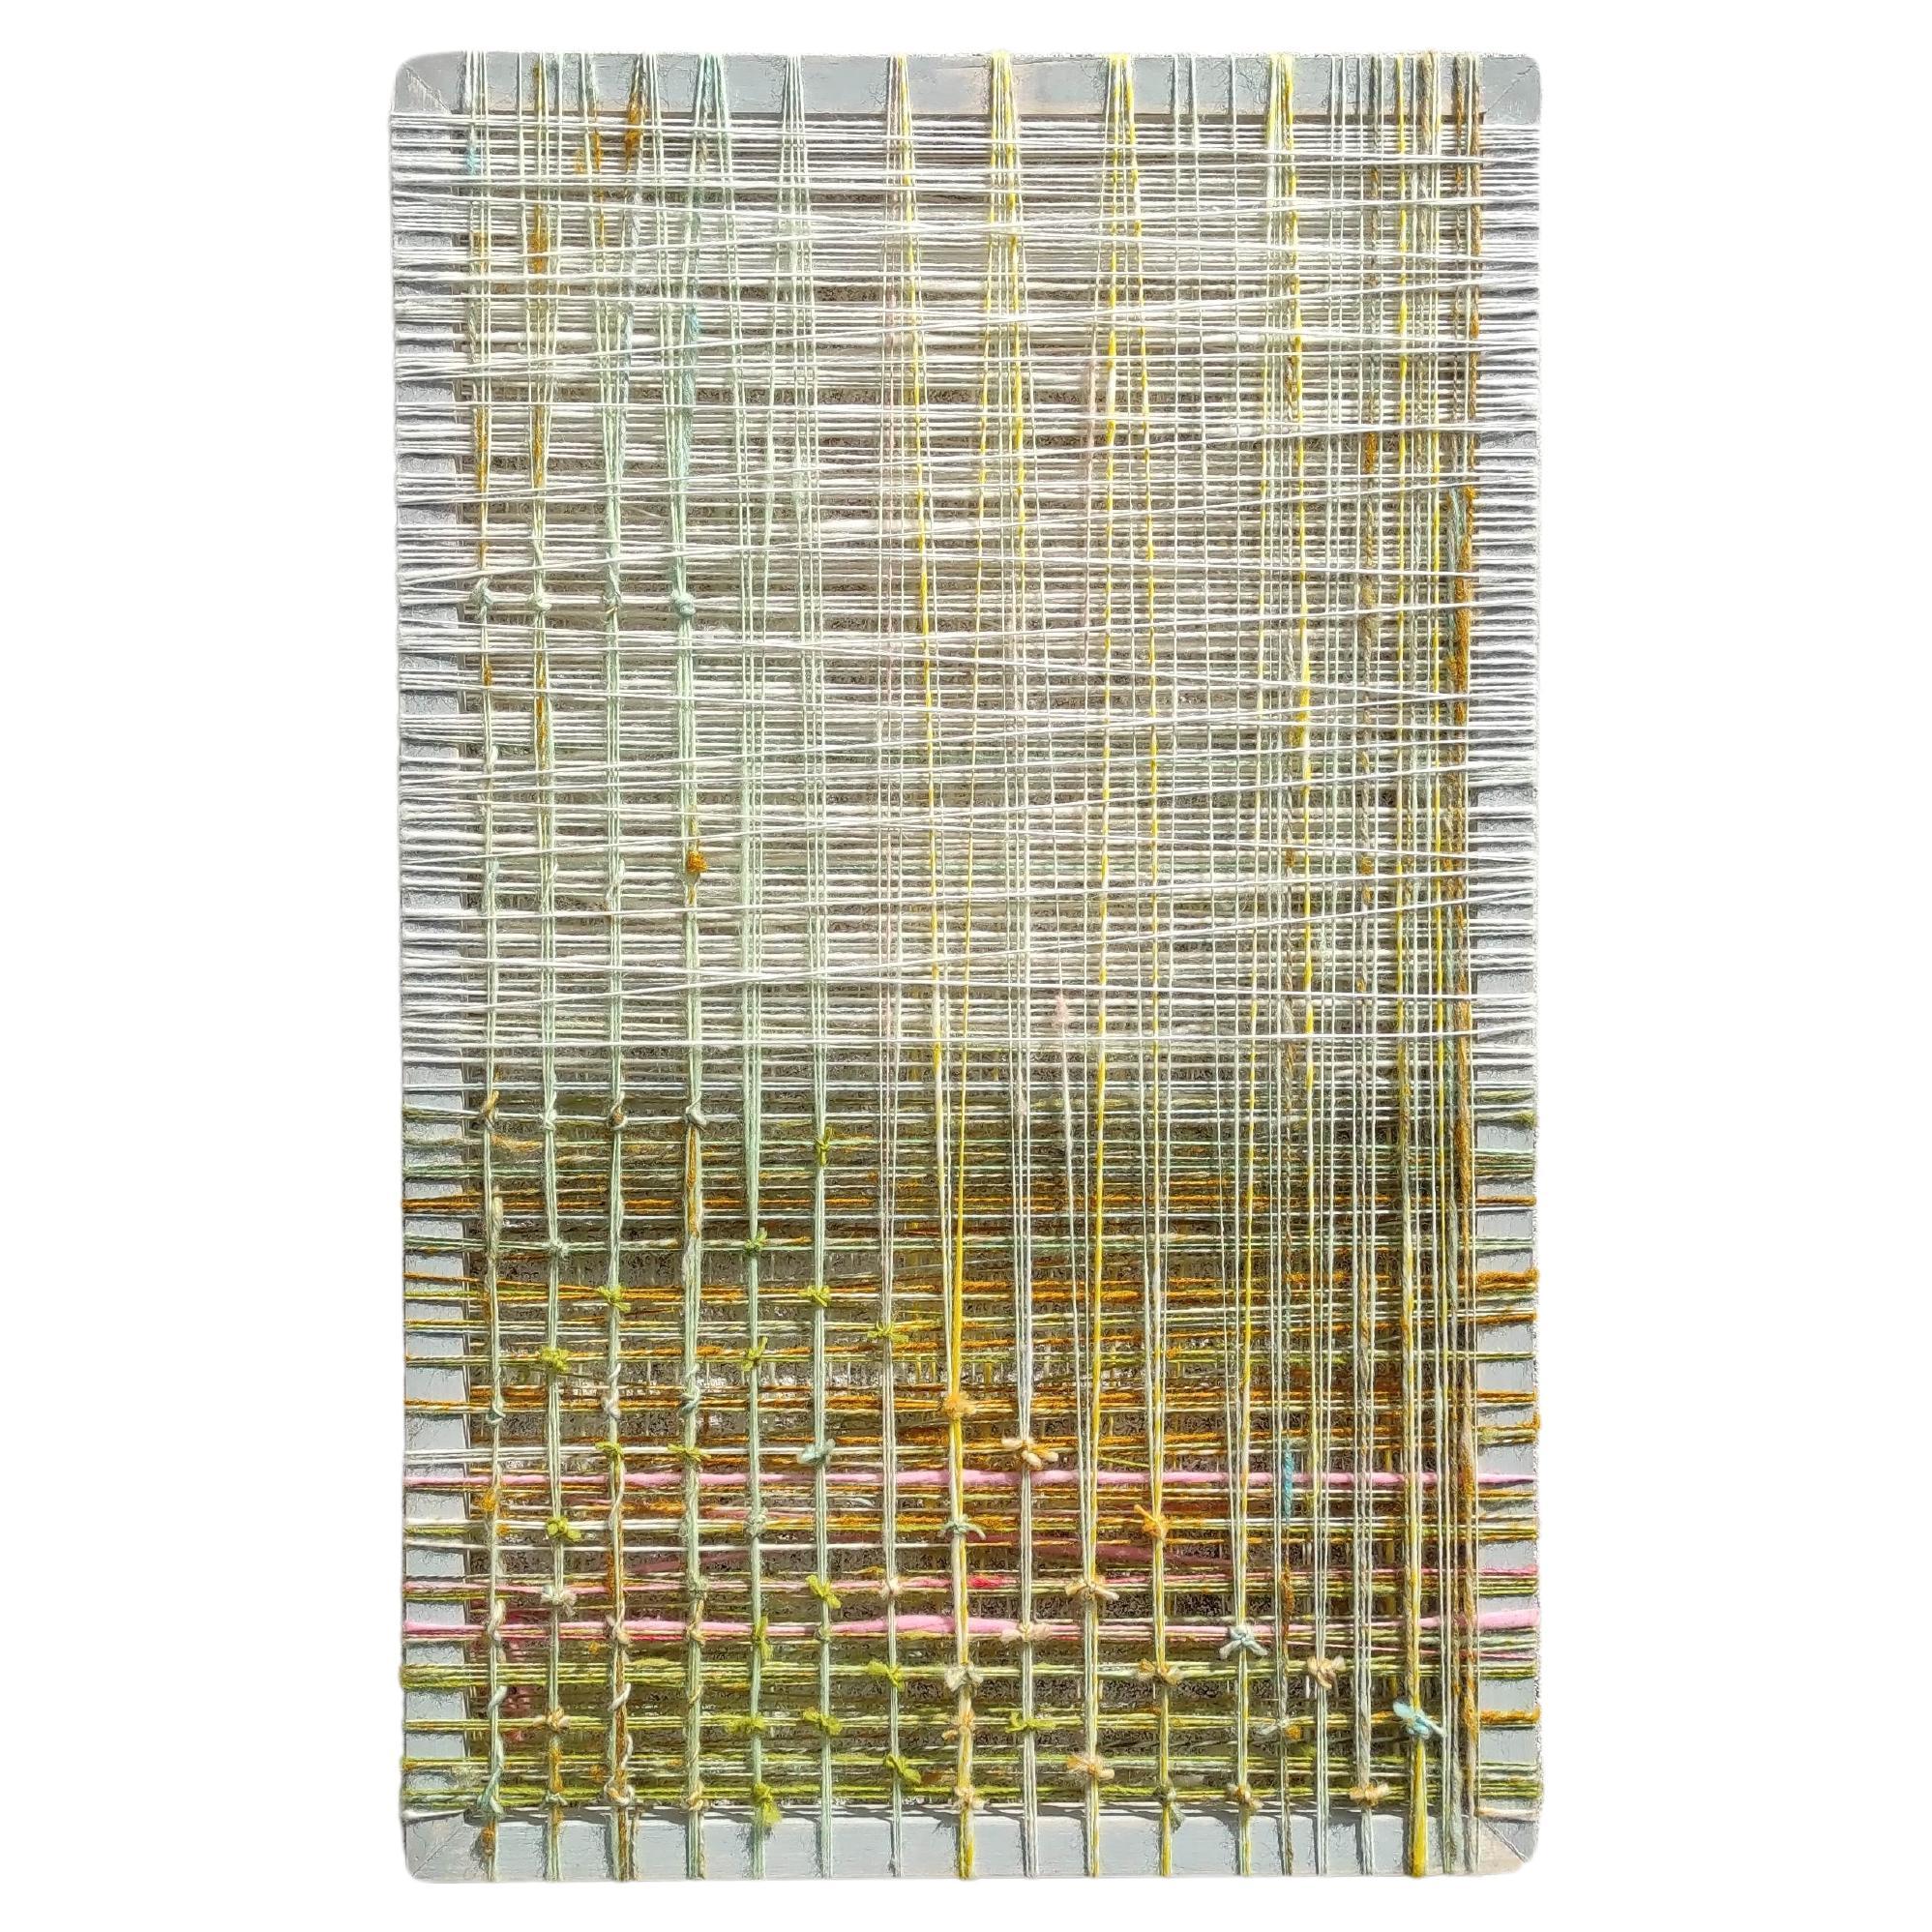 Contemporary Woolen Art Work - Abstract Woolen Wall Object